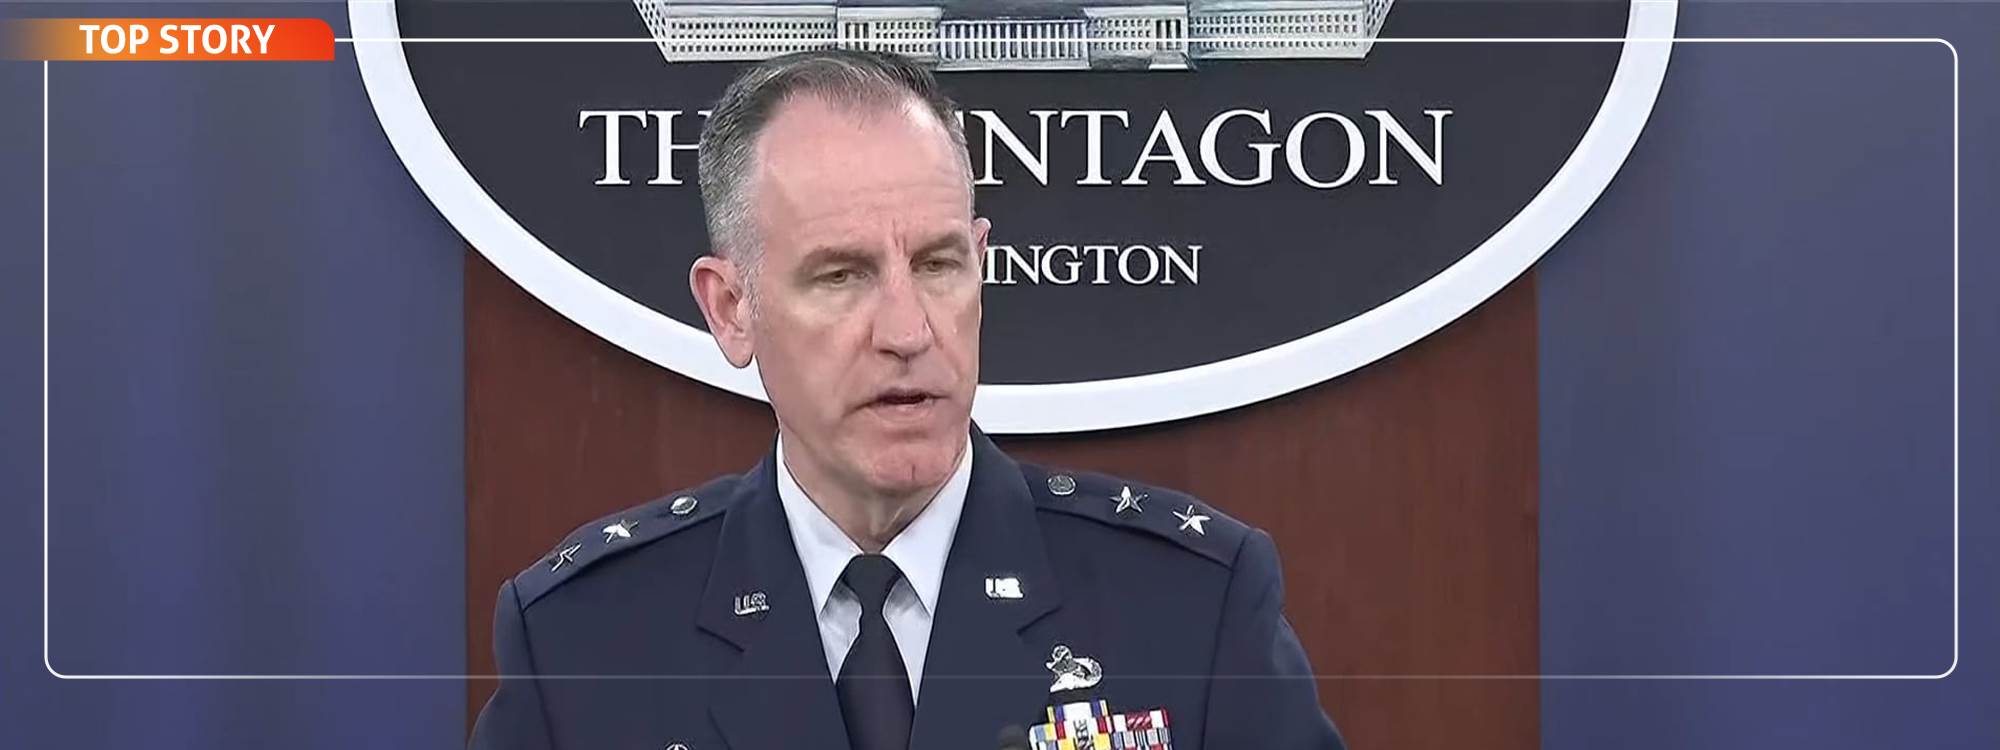 المتحدث باسم وزارة الدفاع الأميركية لرووداو: داعش يزداد قوة في أفريقيا وأفغانستان